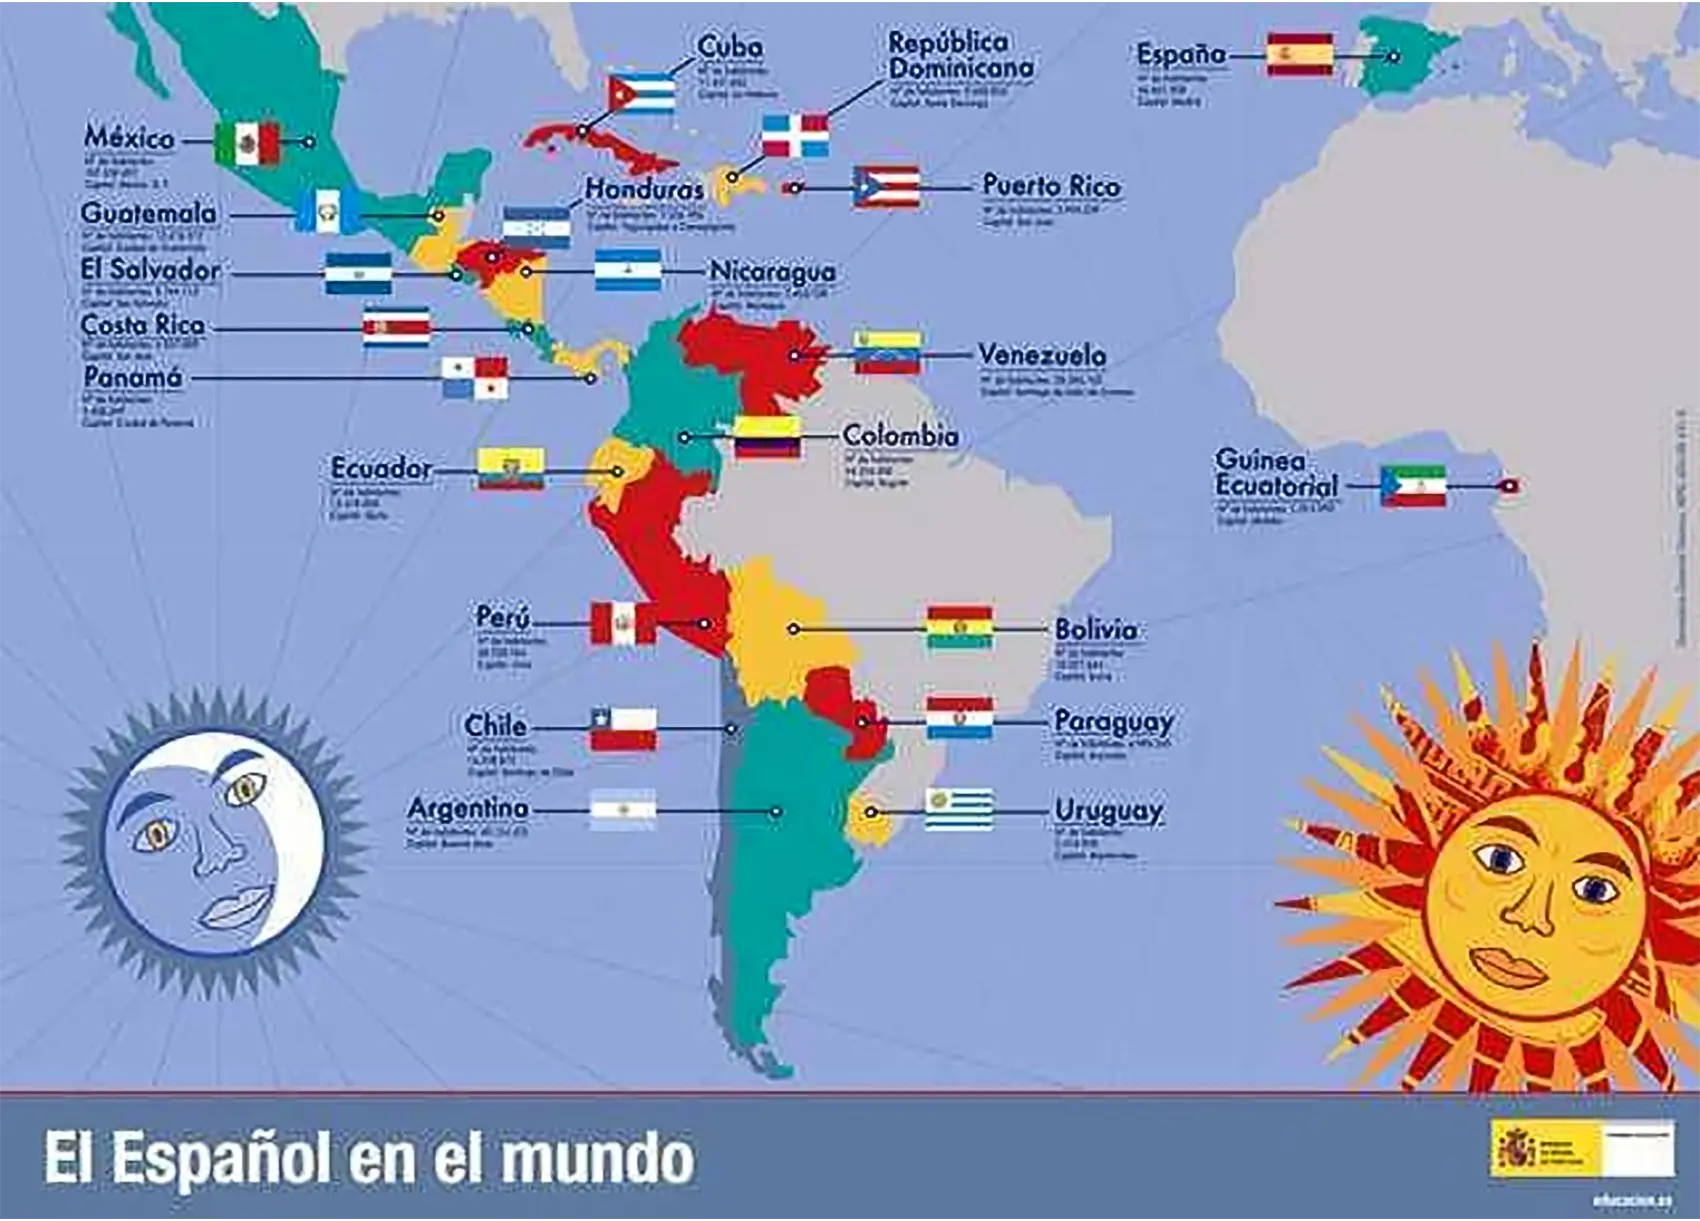 Какие страны говорят на. В каких странах говорят на испанском языке на карте. В каких странах говорят на испанском языке. Карта распространения испанского языка в мире. Сколько стран говорят на испанском языке.